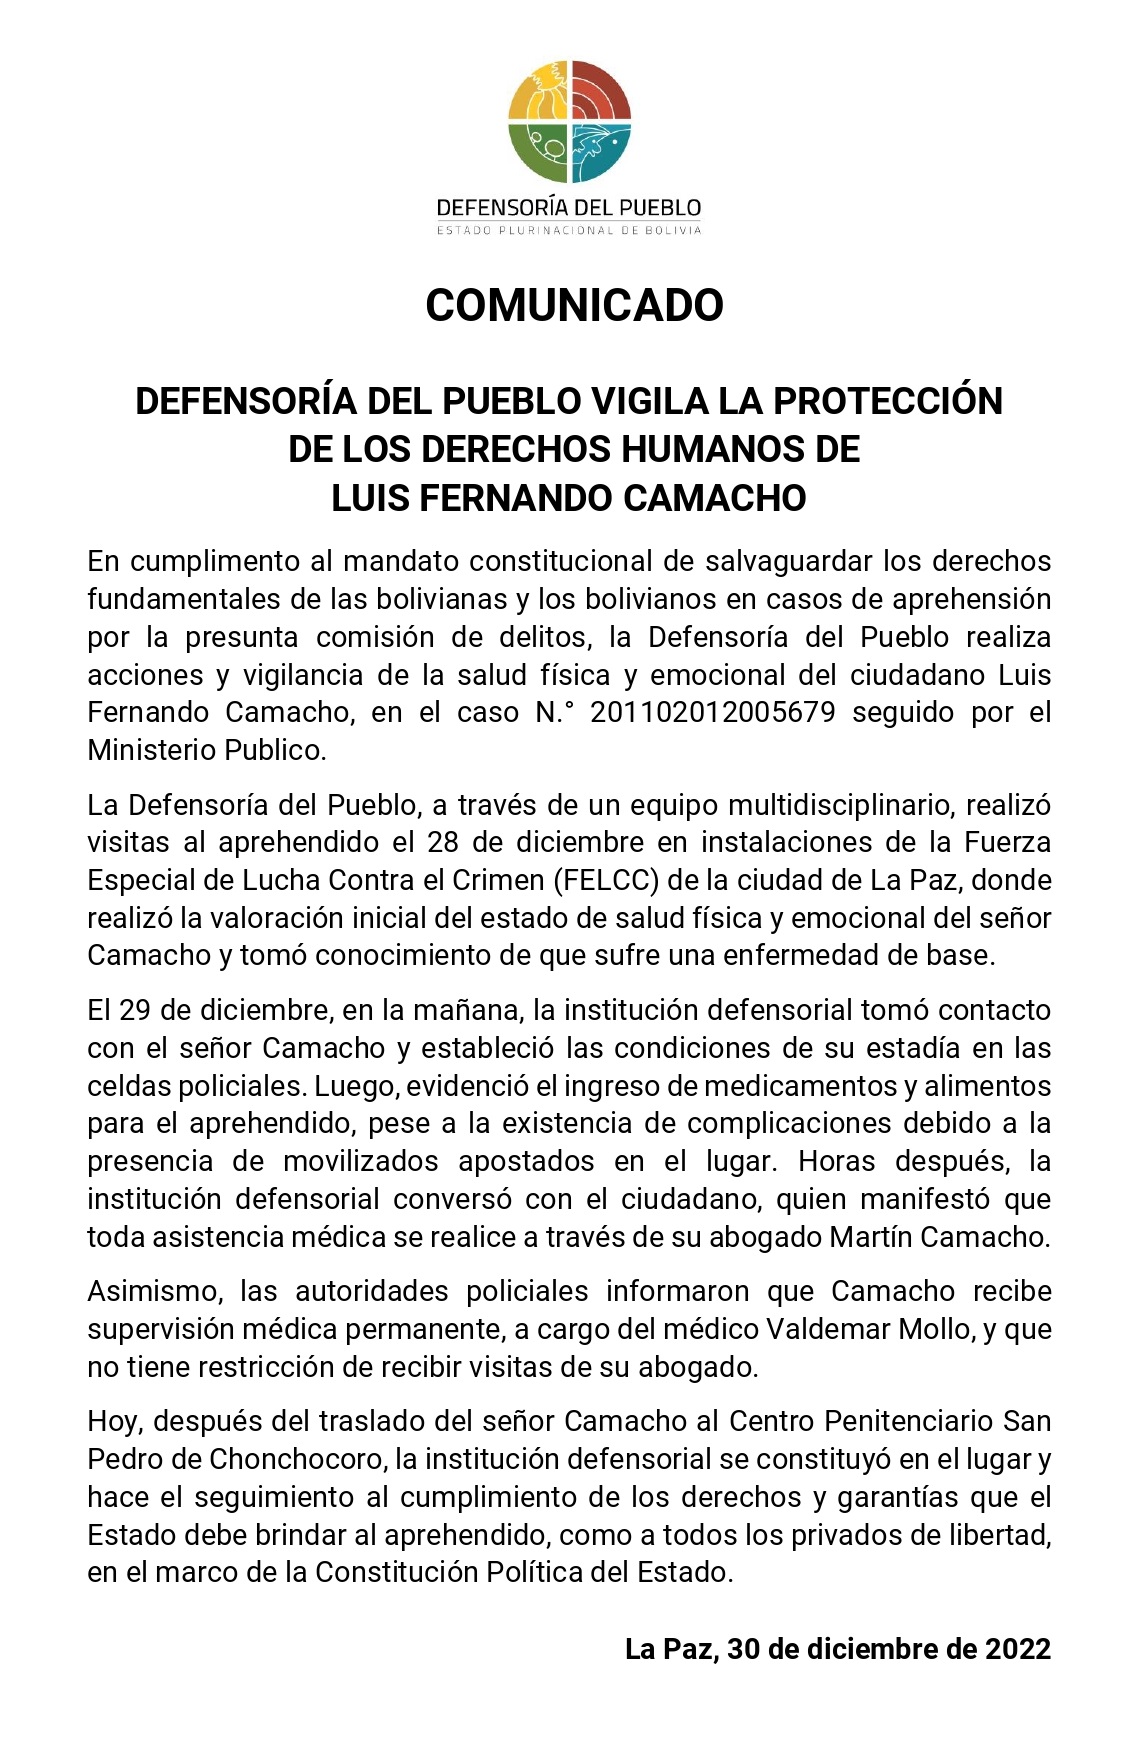 DEFENSORÍA DEL PUEBLO VIGILA LA PROTECCIÓN DE LOS DERECHOS HUMANOS DE LUIS FERNANDO CAMACHO